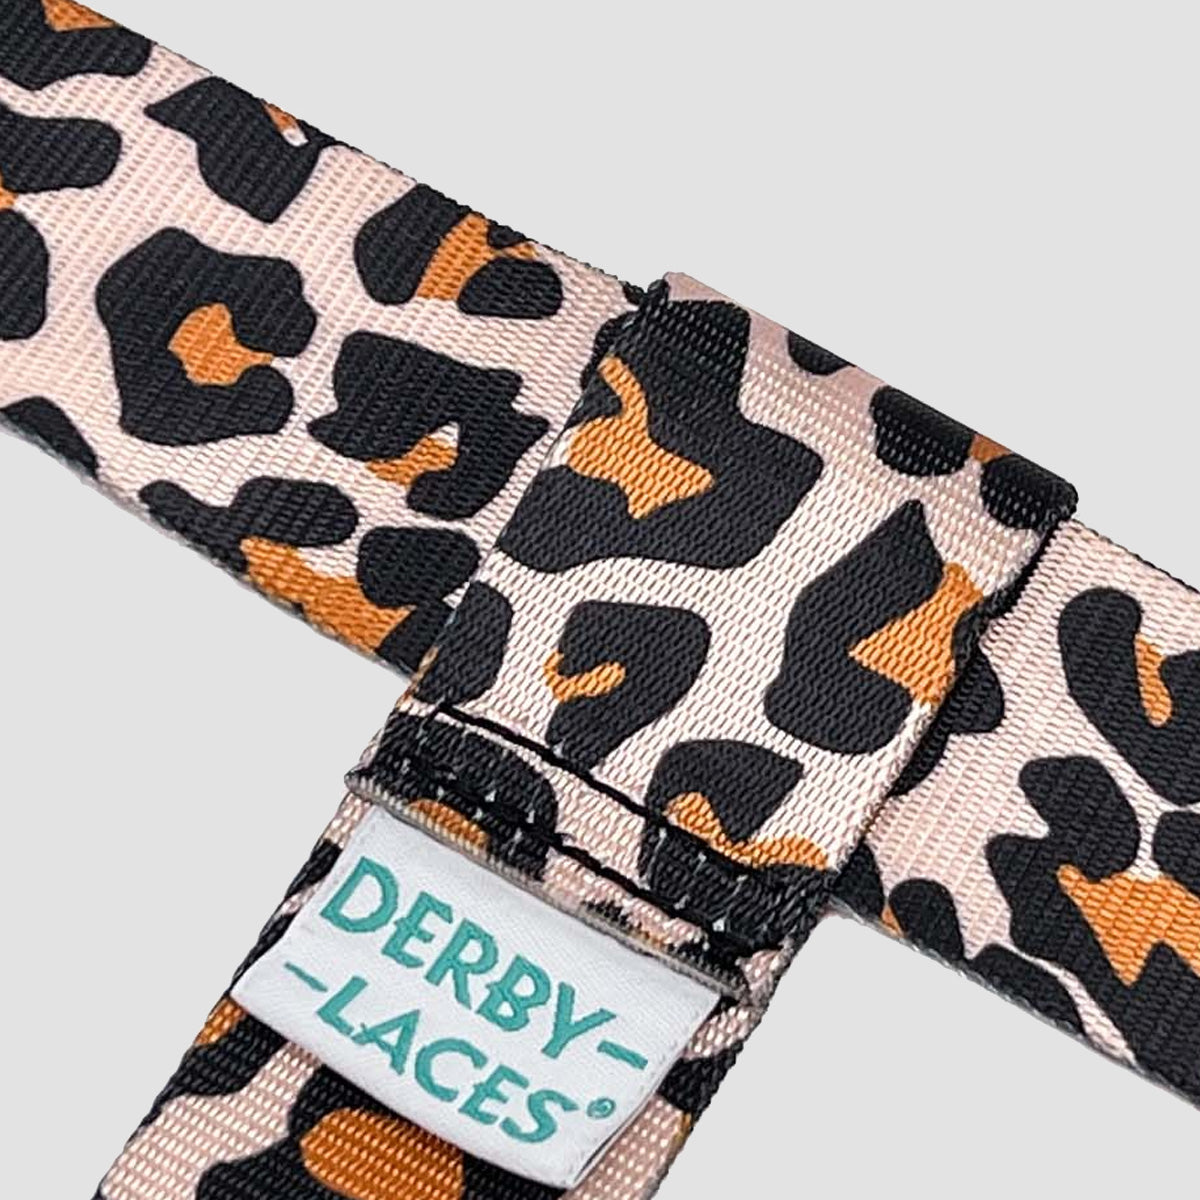 Derby Laces Skate Strap - Gear Leash Leopard 198cm